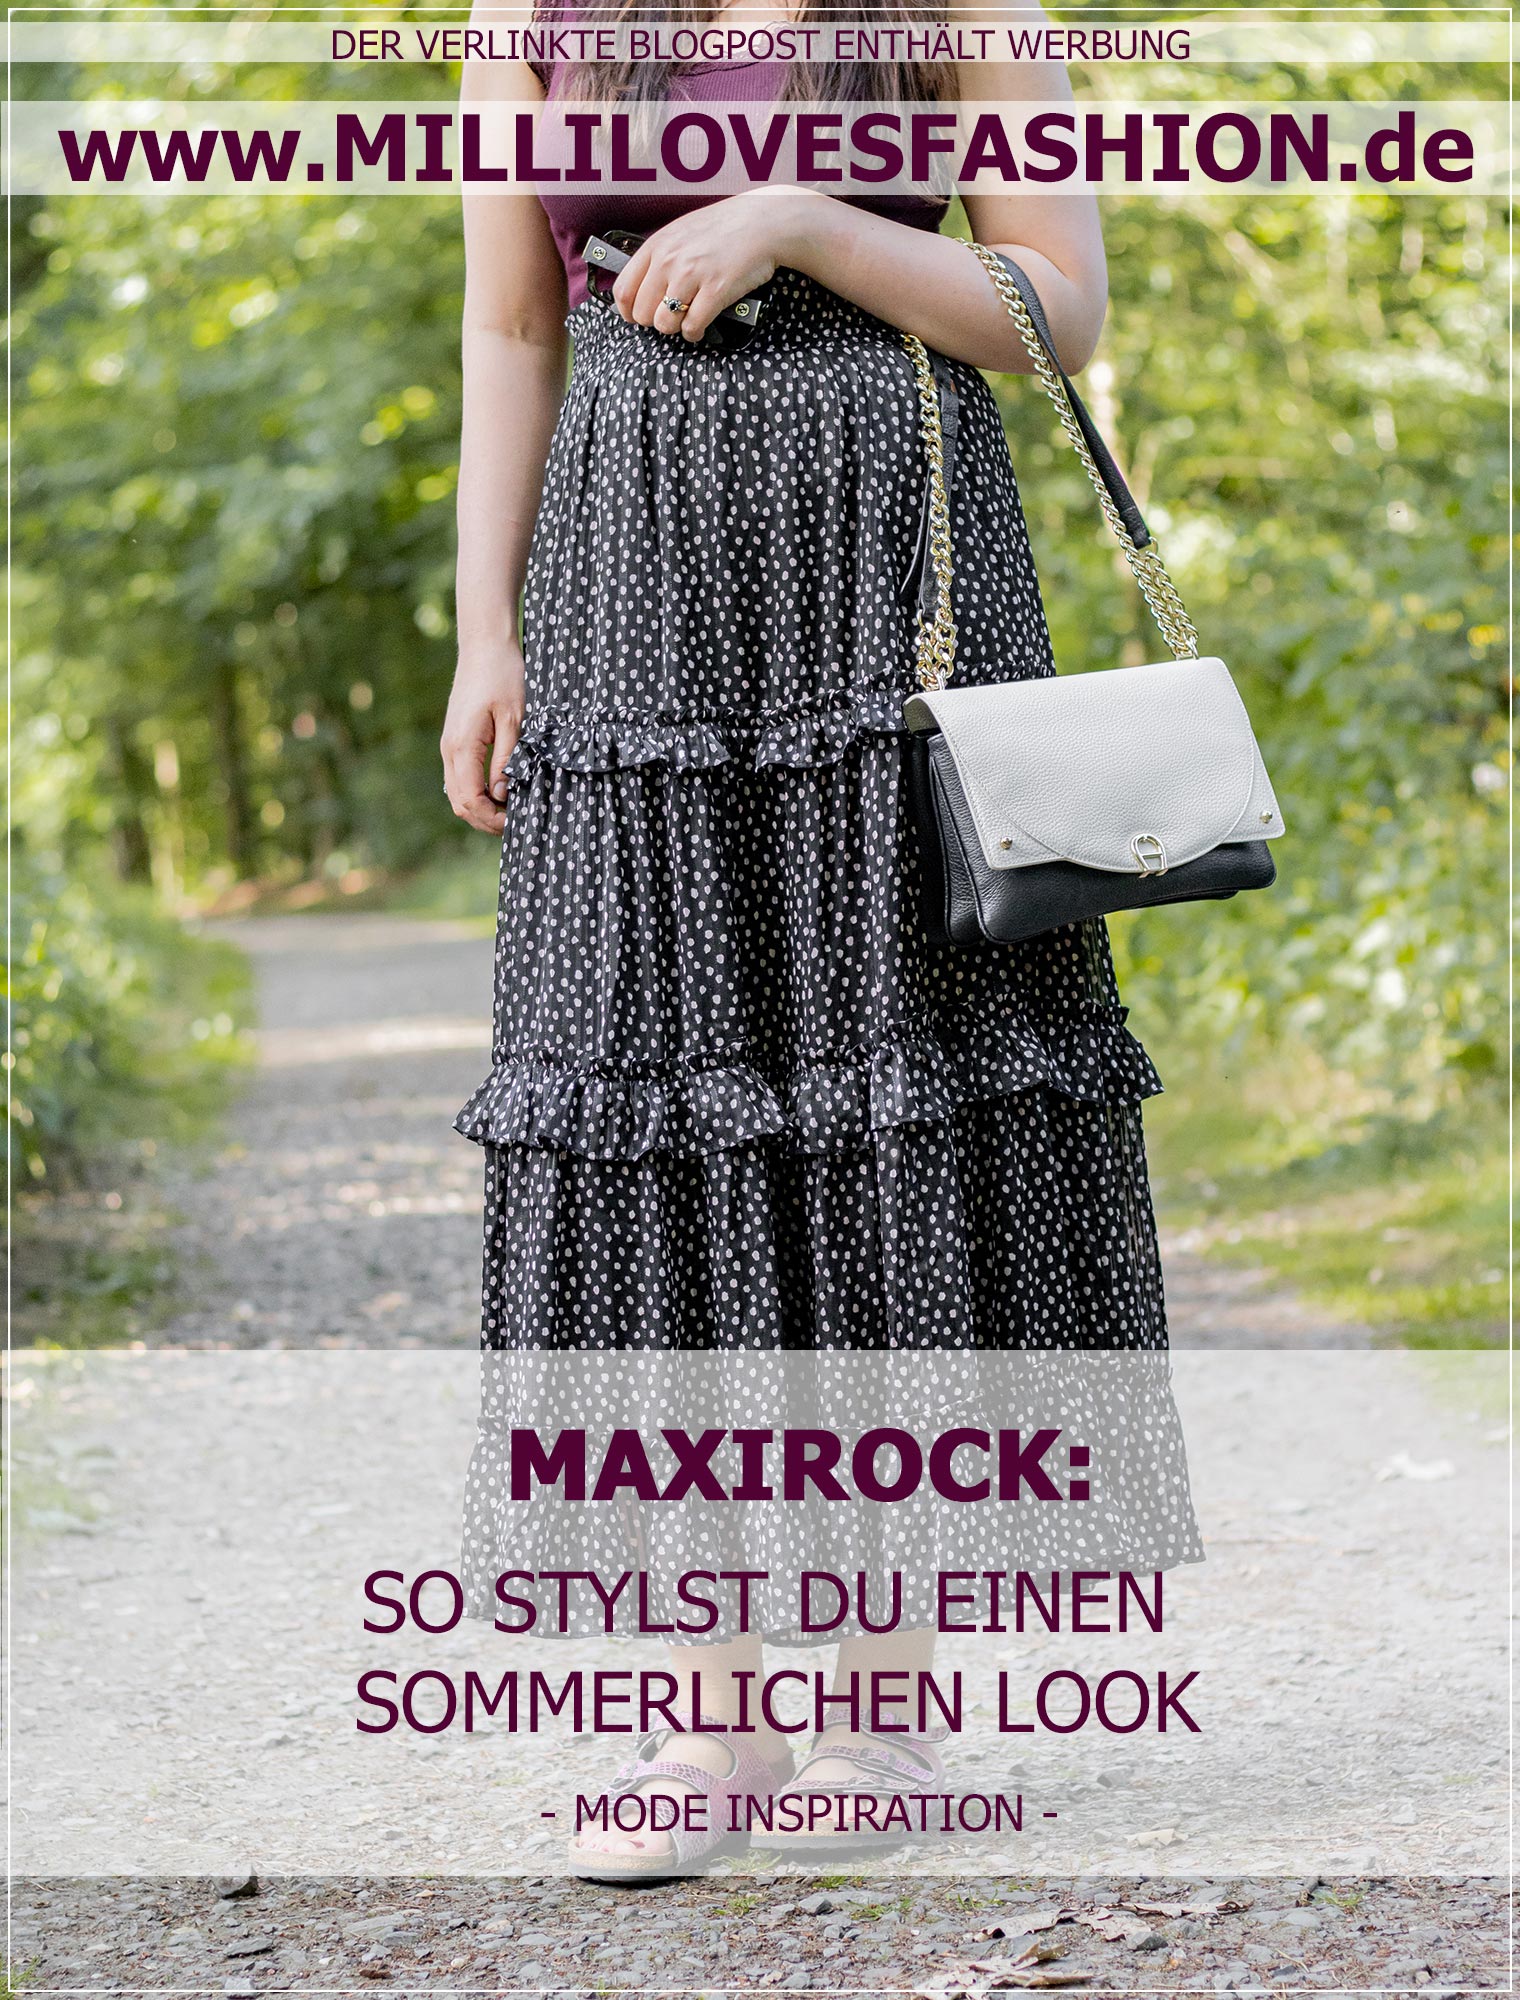 Sommerlicher Look mit Maxirock und Spitzentop